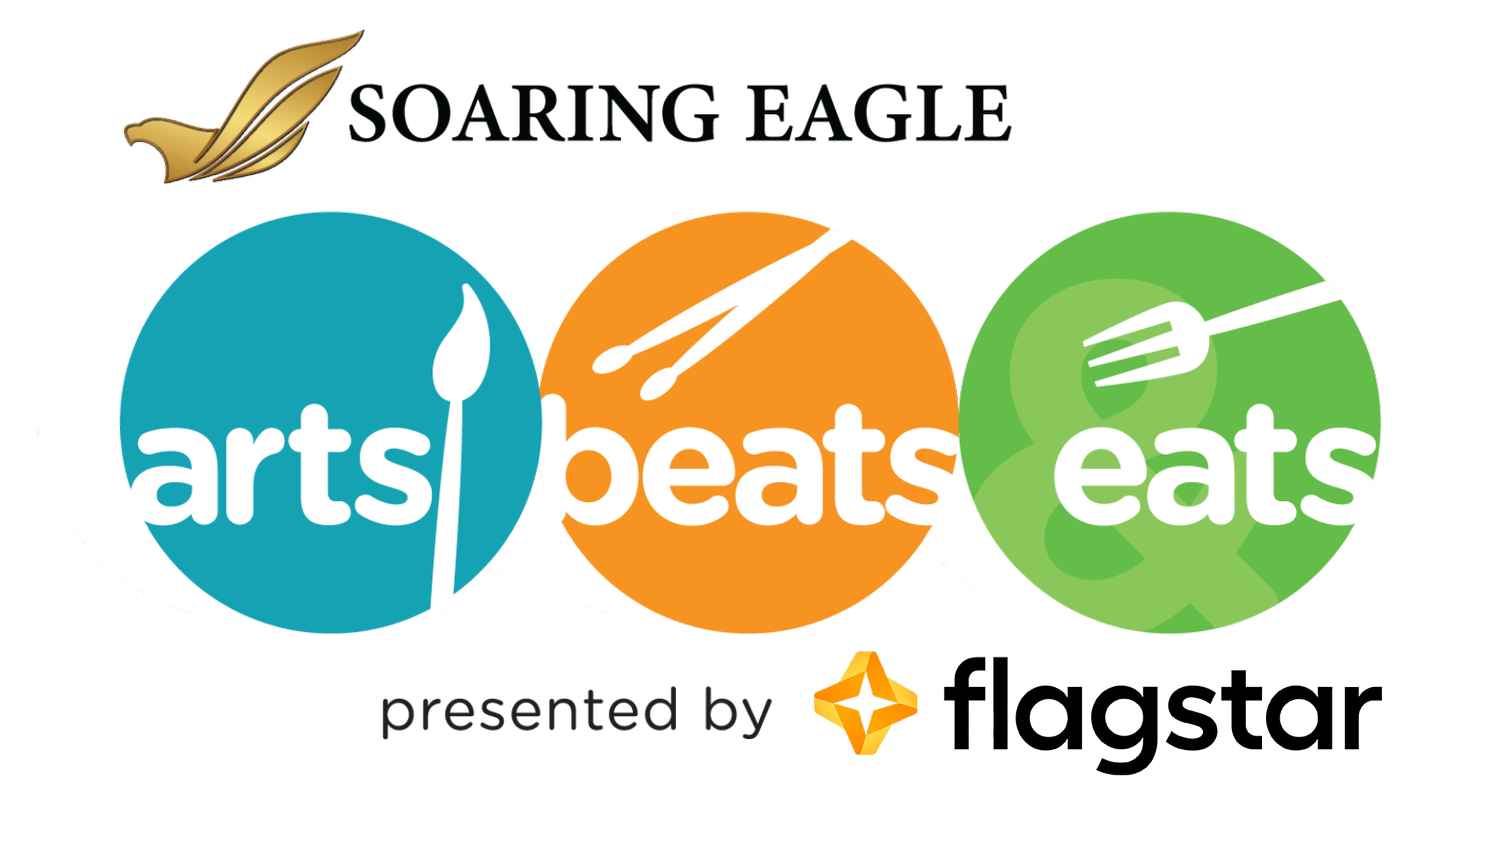 Soaring Eagle Arts Beats & Eats